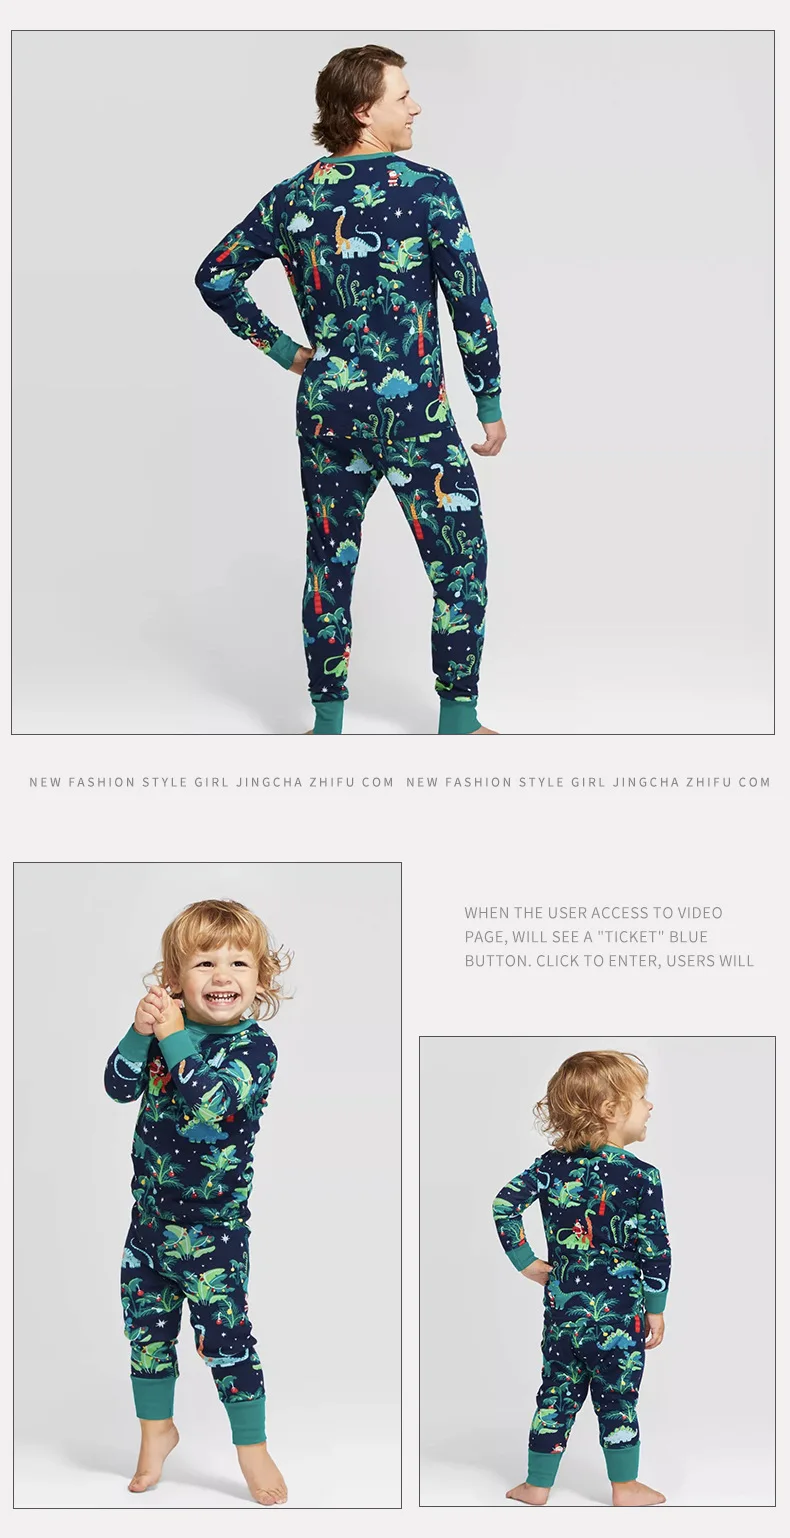 DogMEGA Dinosaur Print Pajamas for Family and Dog | Family Matching Pajamas Christmas